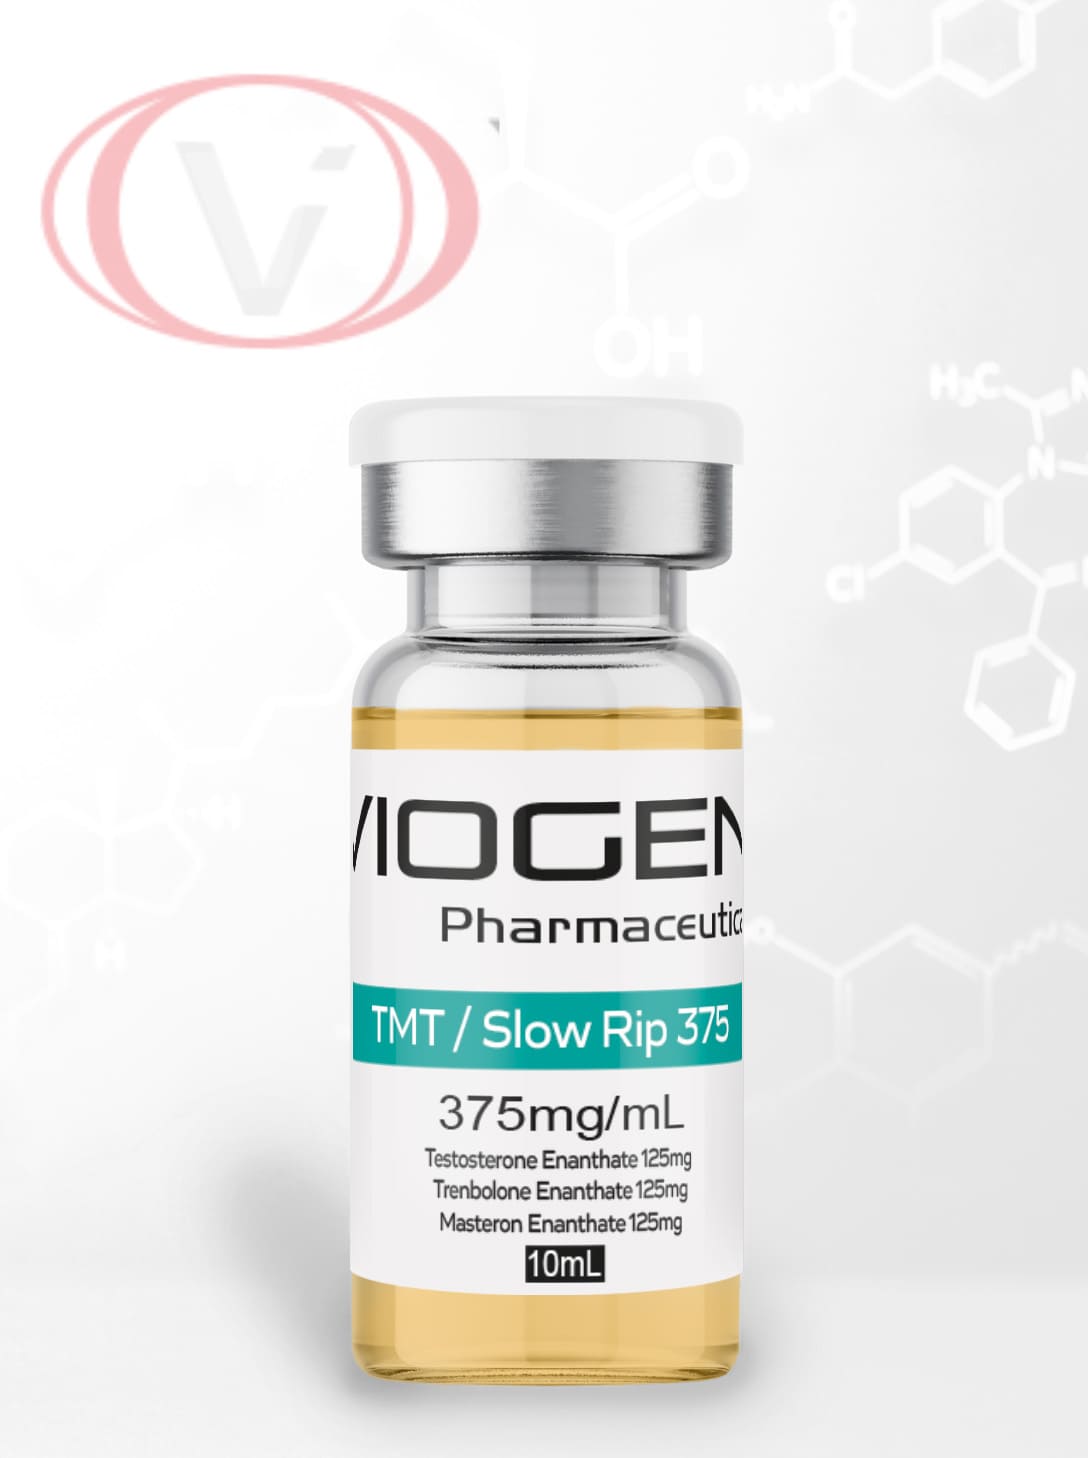 TMT Slow Rip 375 Mg 10 Ml Viogen Pharma